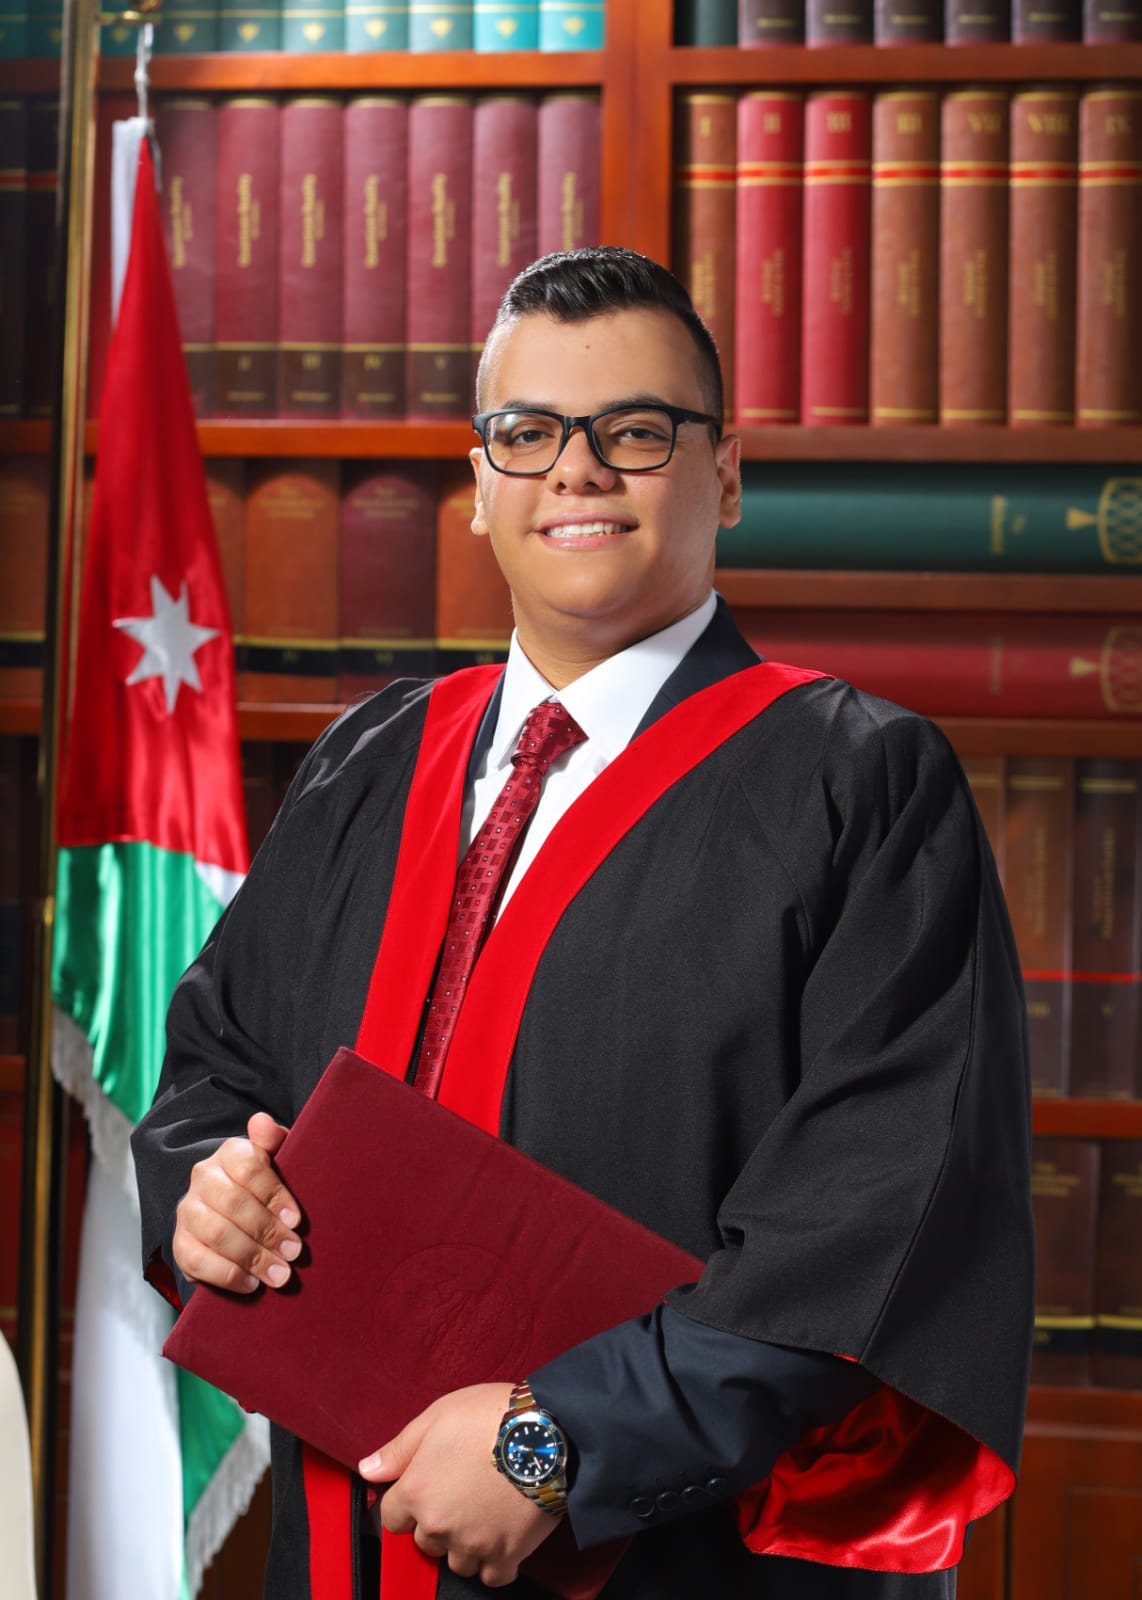 أحمد الخلايلة مبارك التخرج